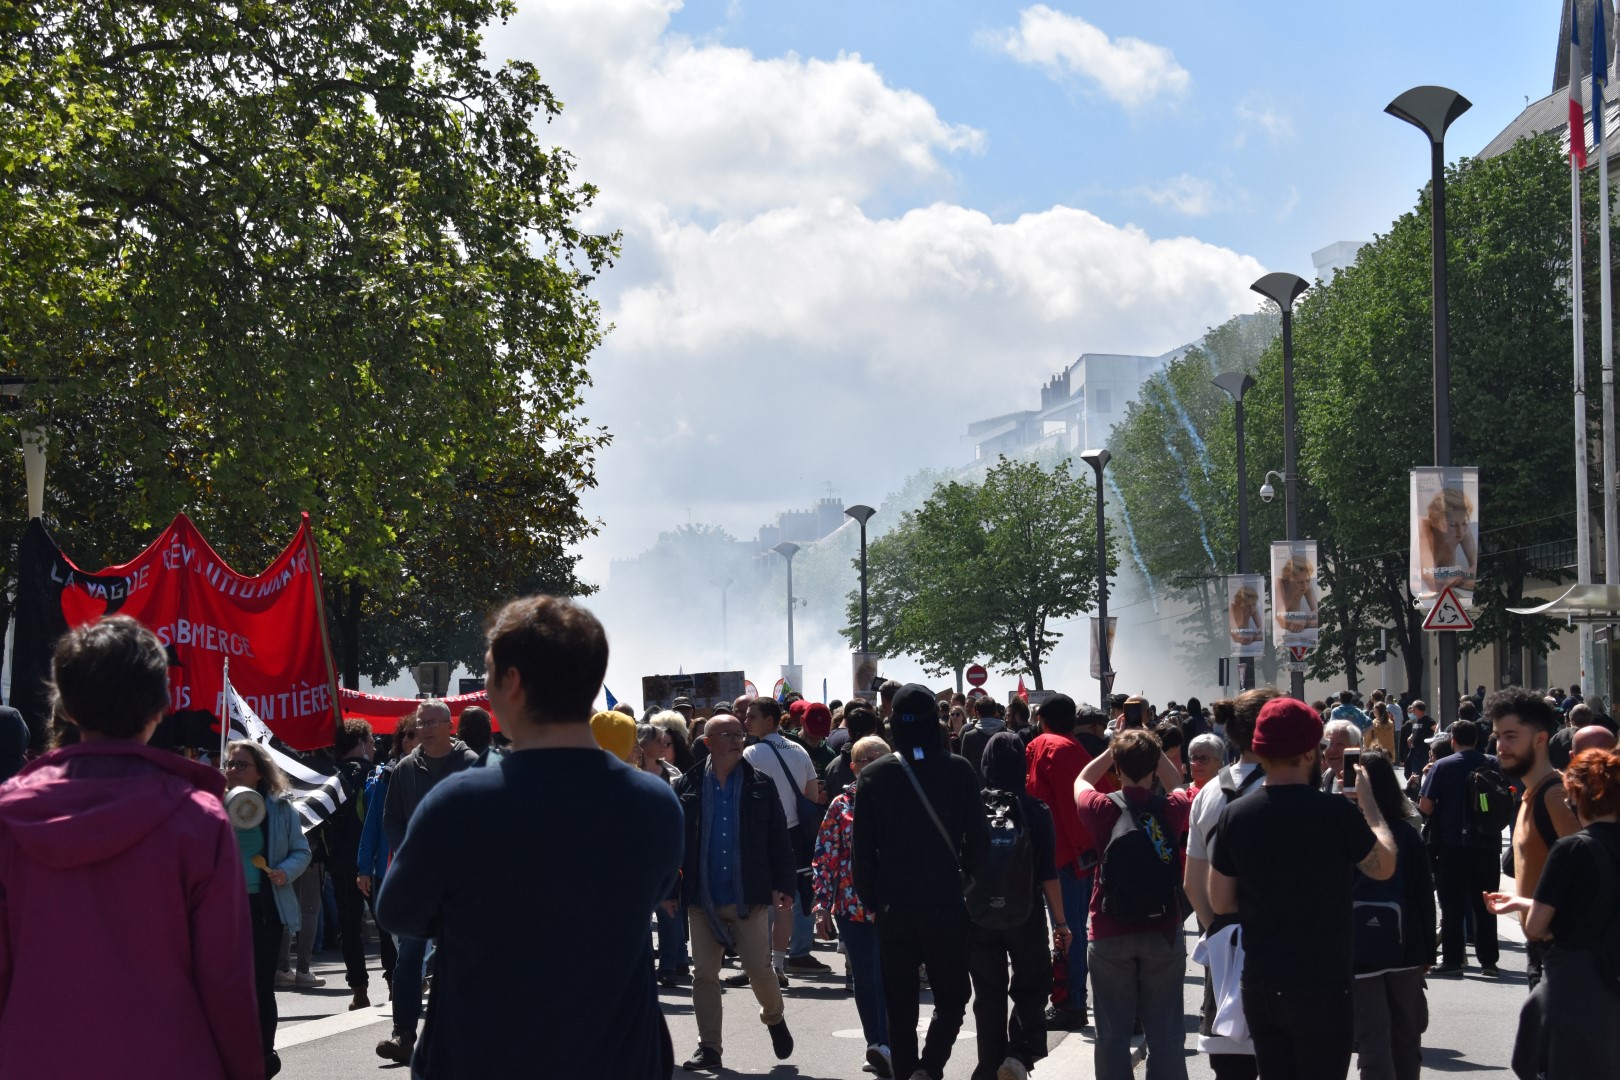 May 1 protest, Nantes